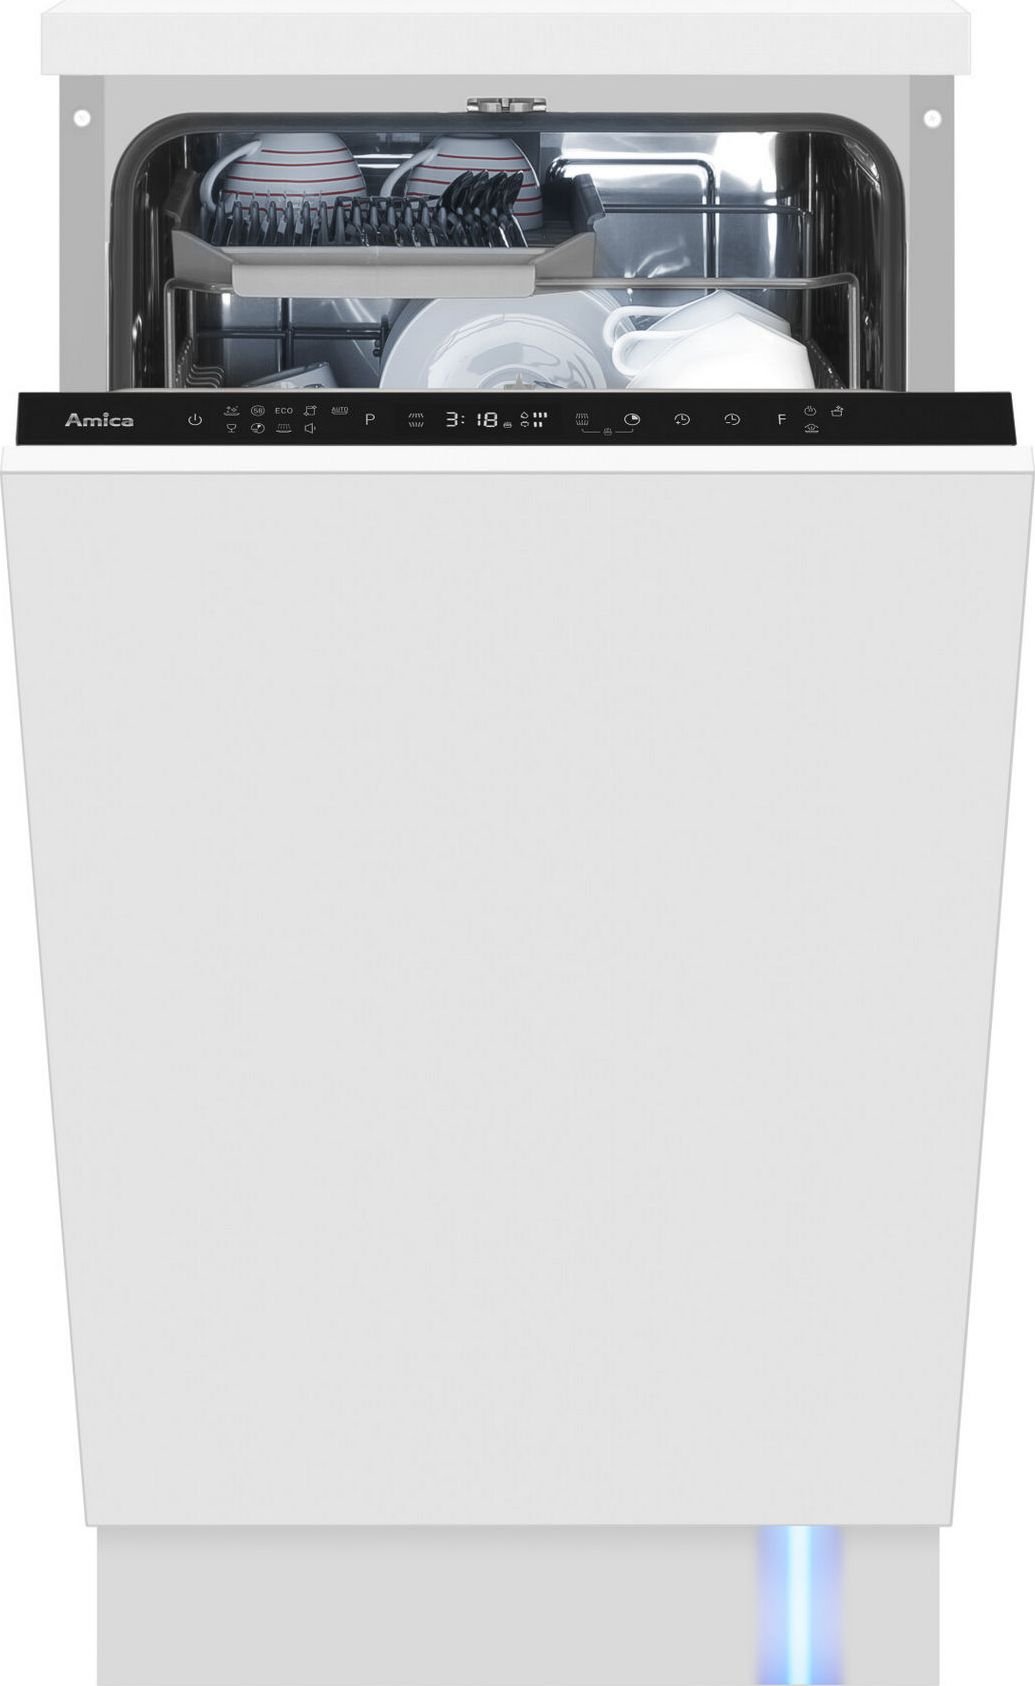 Masini de spalat vase incorporabile - Mașină de spălat vase Amica DIM46C9TBONSiH,10 seturi,44 dB,44.8 cm